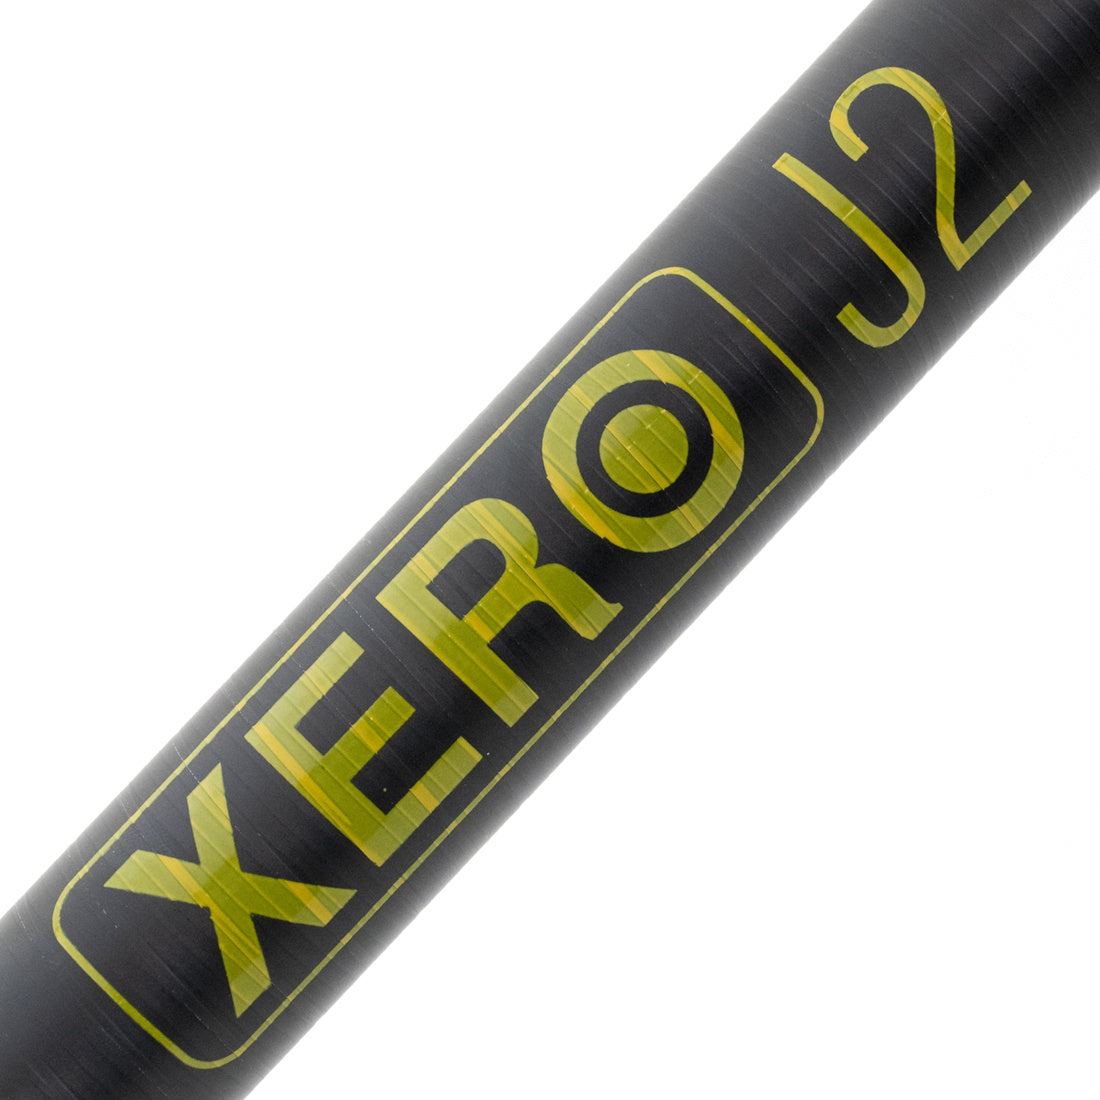 XERO J2 Pole Label View